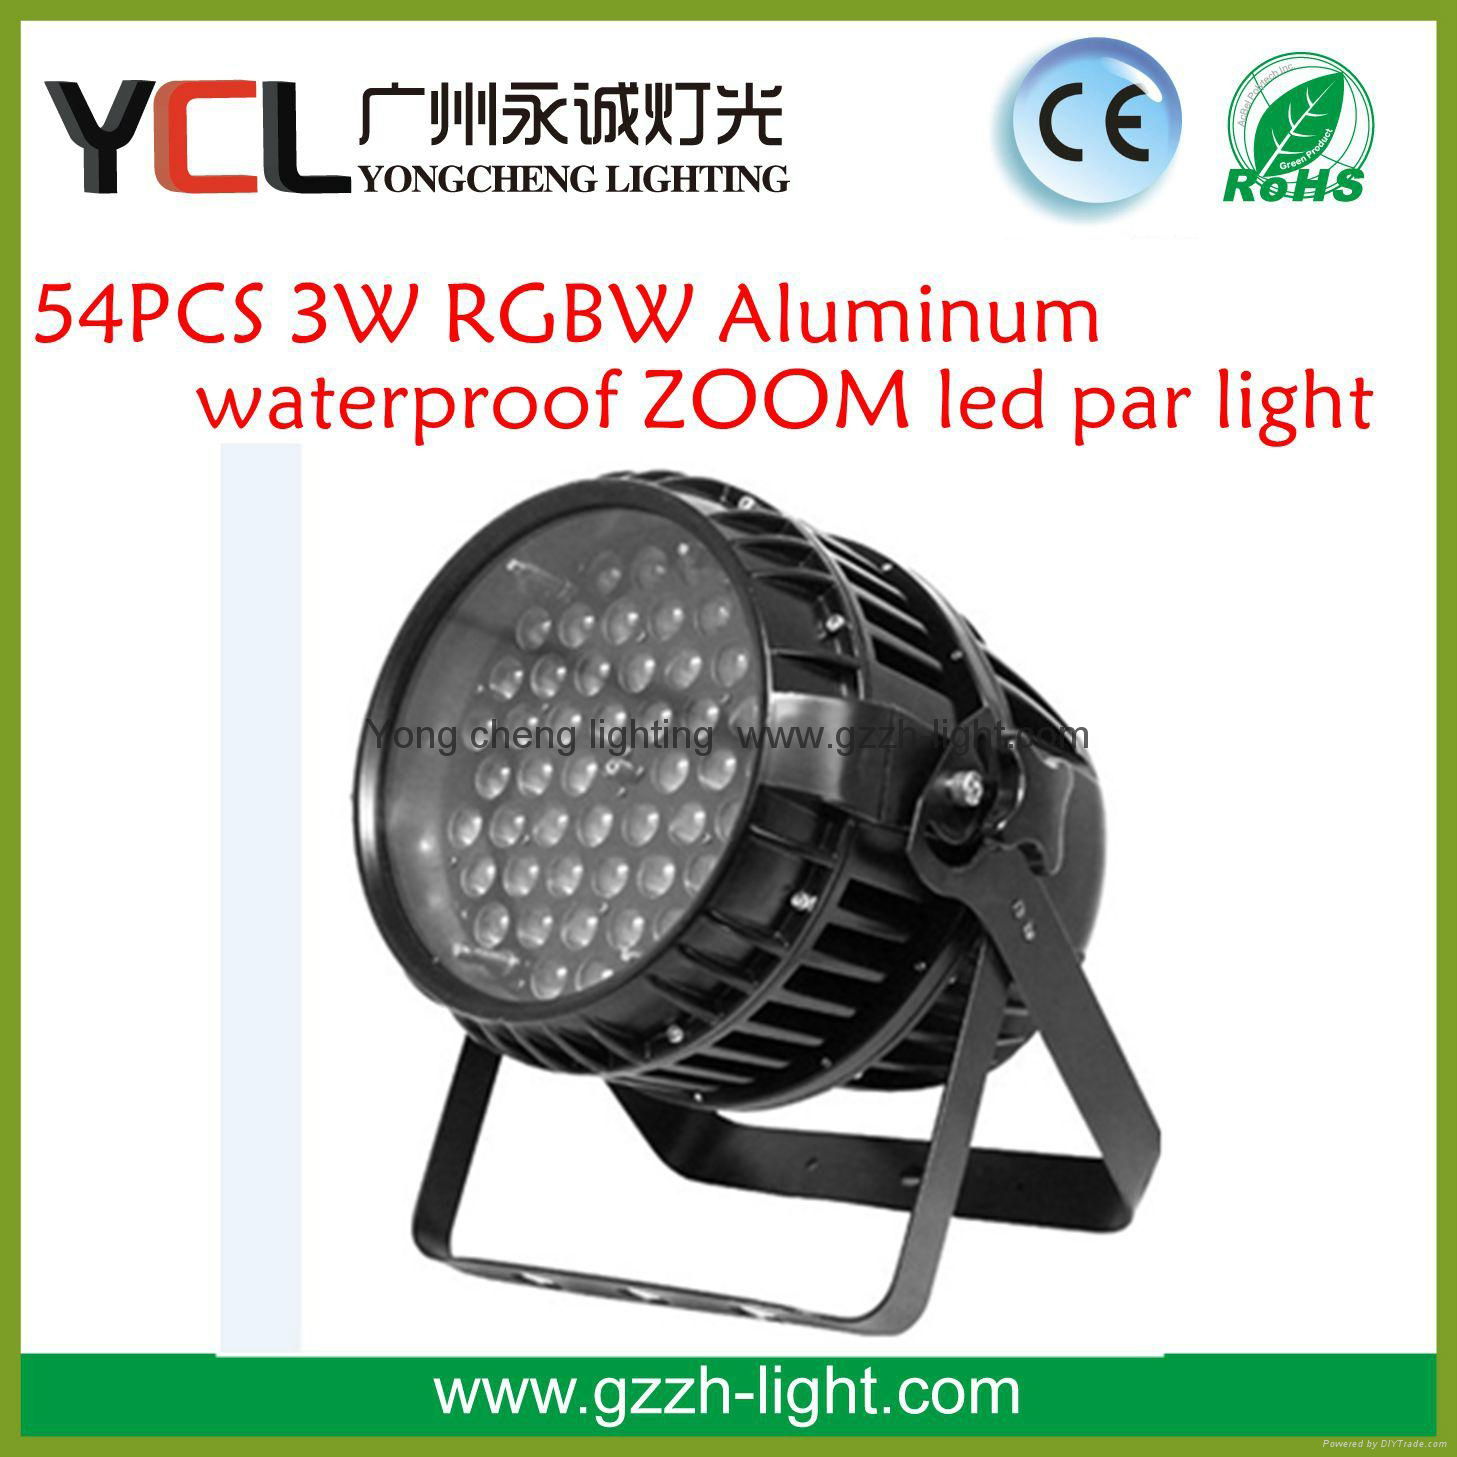 54PCS 3W RGBW Aluminum waterproof ZOOM led par light